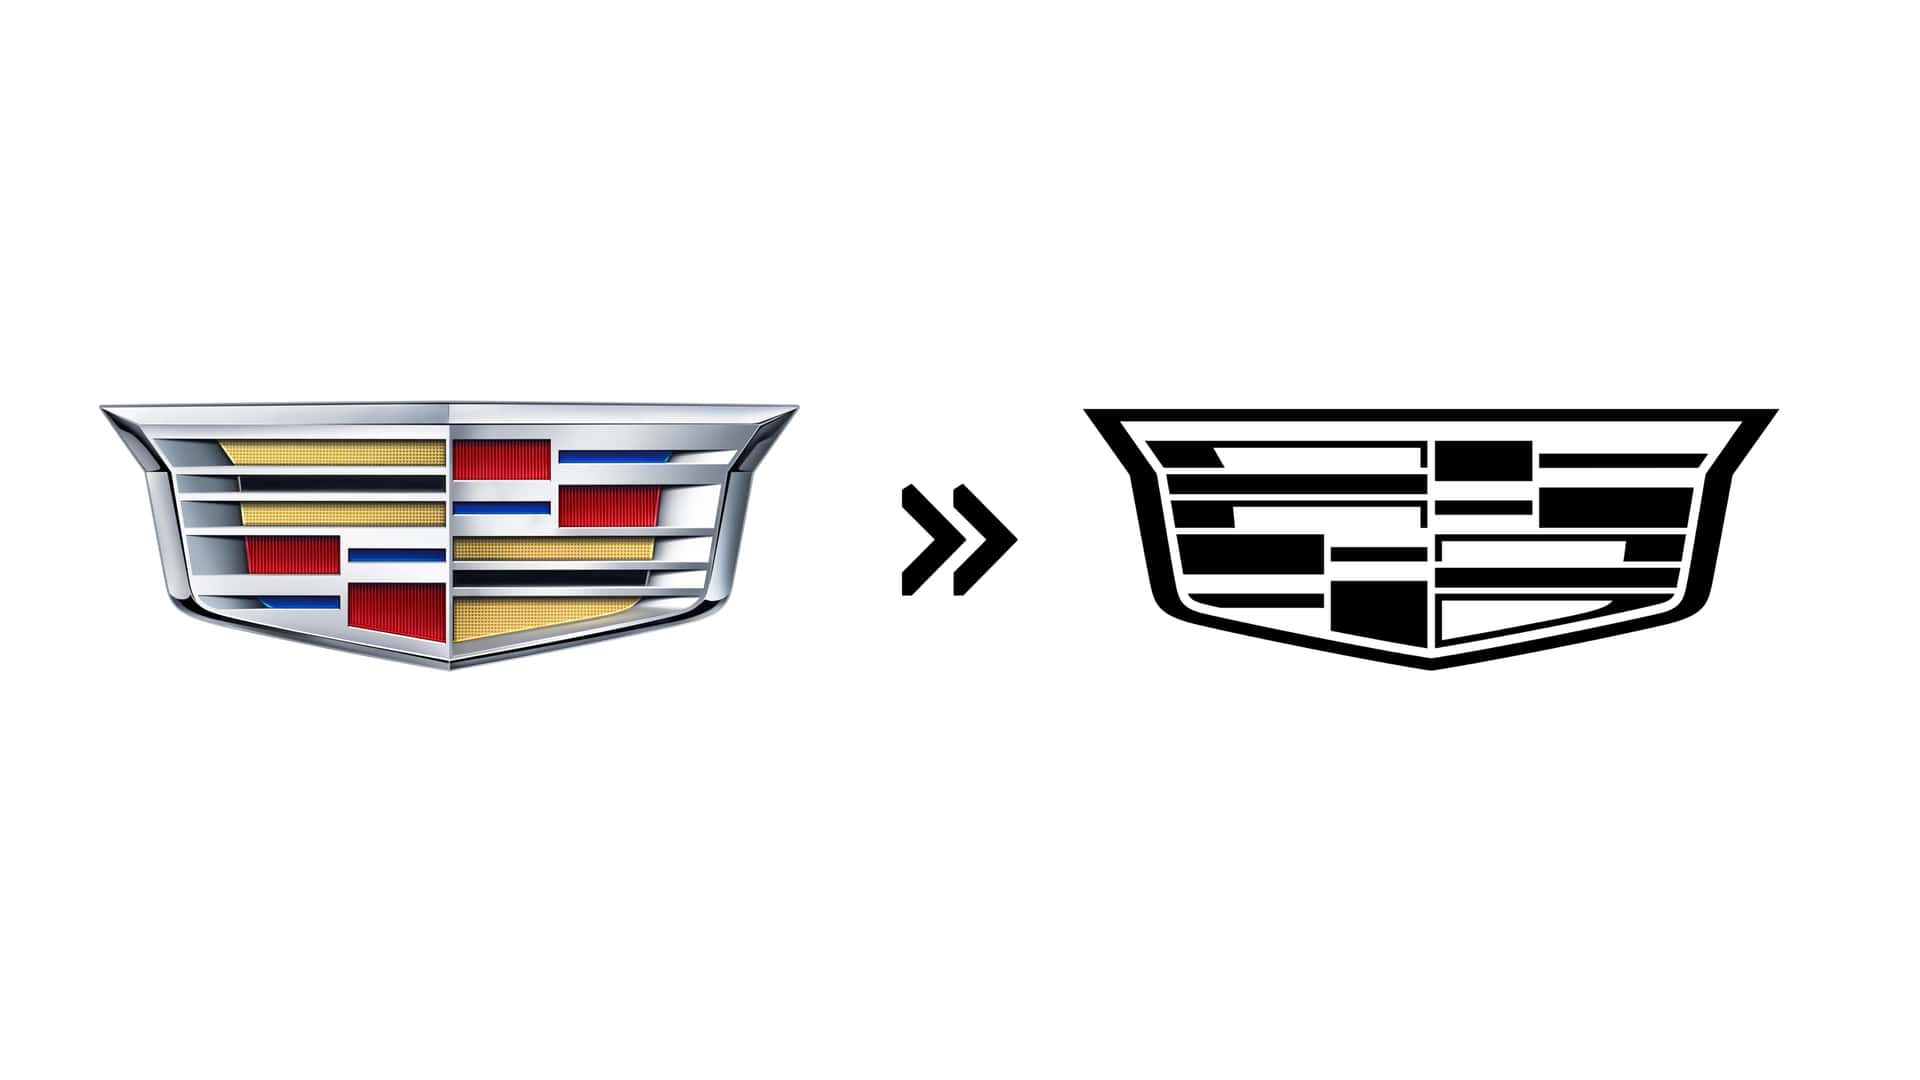 Mọi thương hiệu vừa có logo mới: Cadillac, Porsche, Jaguar Land Rover và hàng loạt các thương hiệu lớn 'thay máu' ra sao? - Ảnh 5.